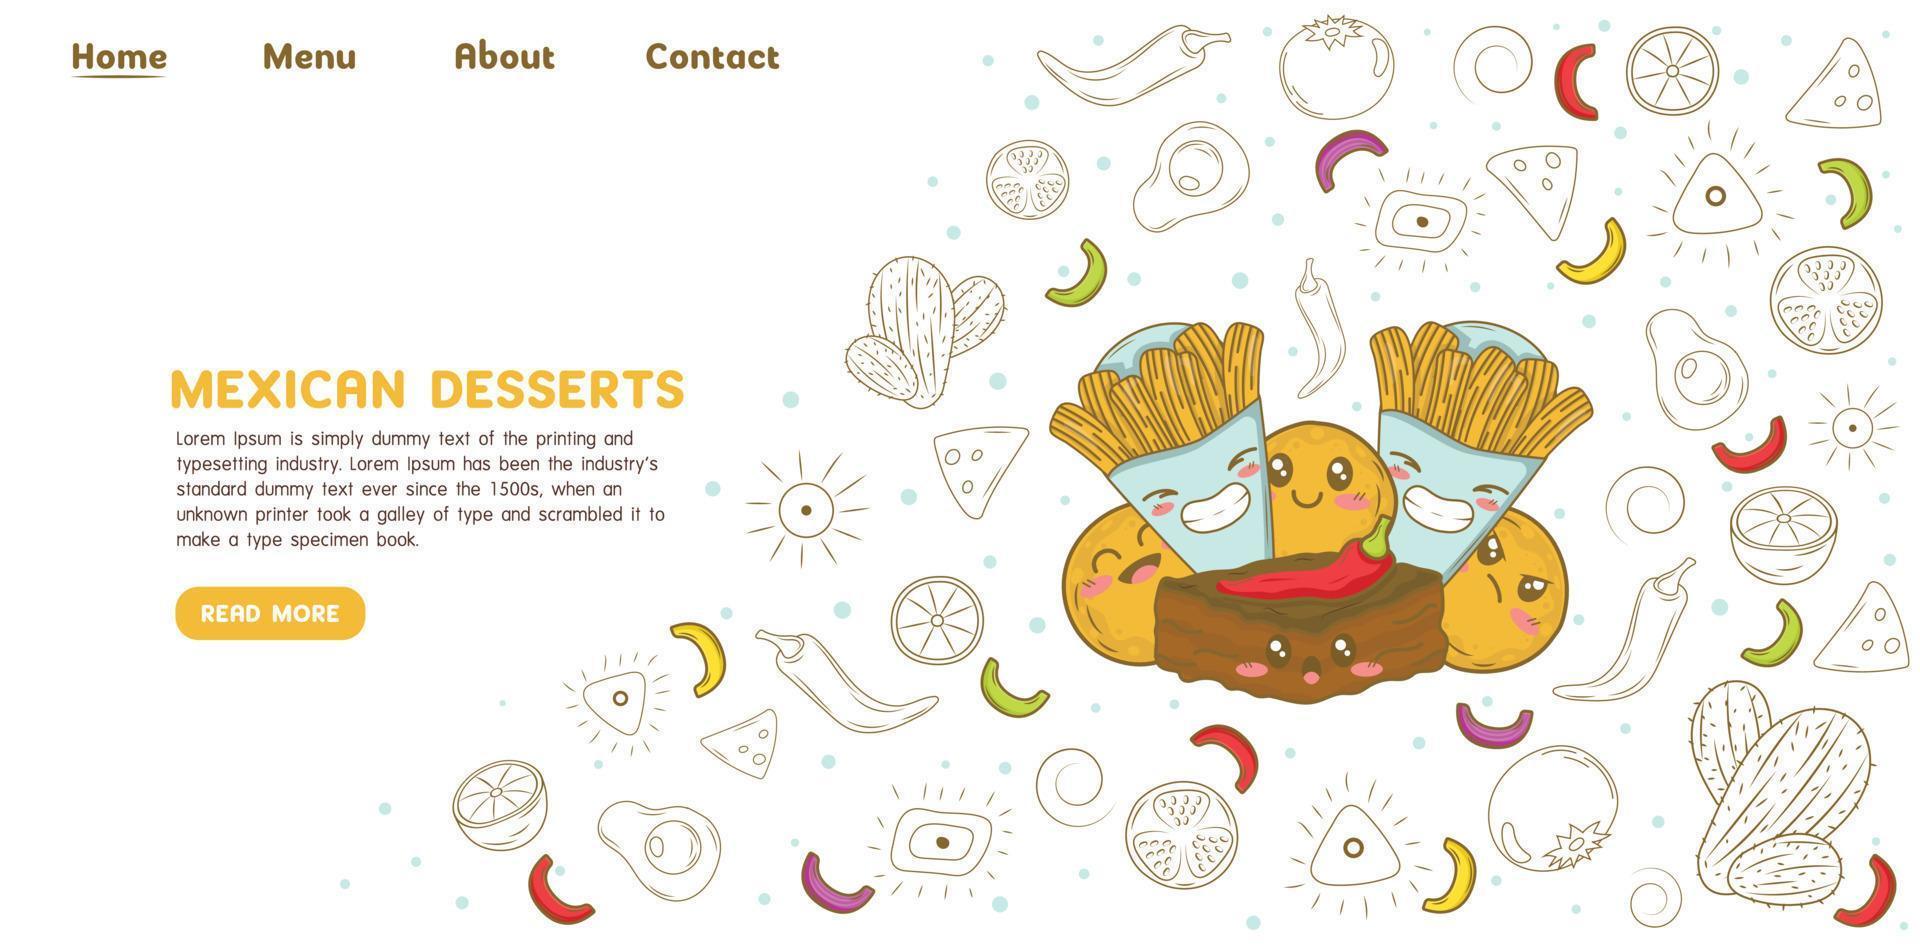 messicano dolci ciambella churros e chili folletto buono atterraggio pagina sito web modello con scarabocchio cartone animato elementi vettore